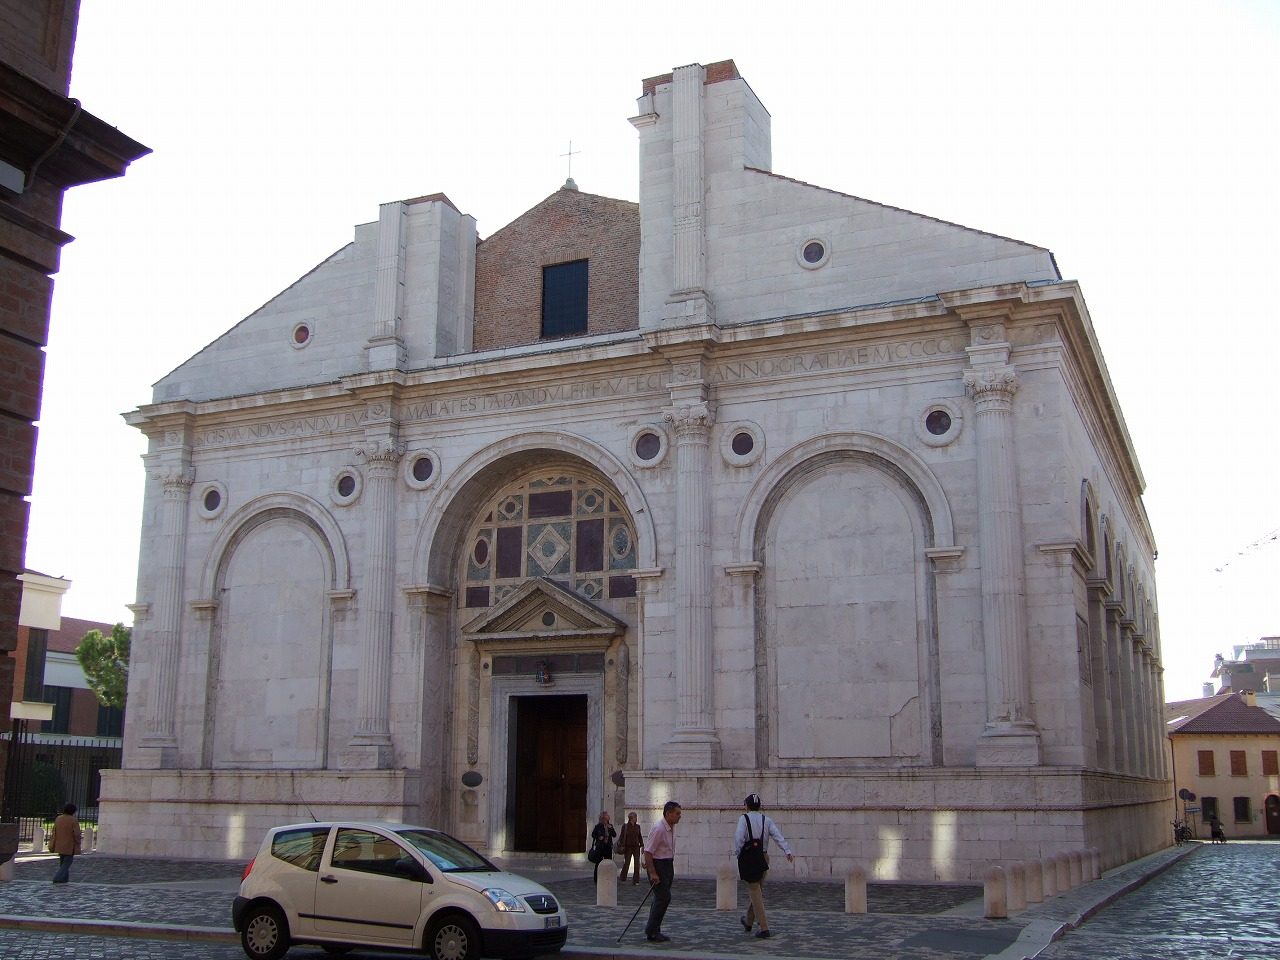 Basilica Cattedrale (Tempio Malatestiano)